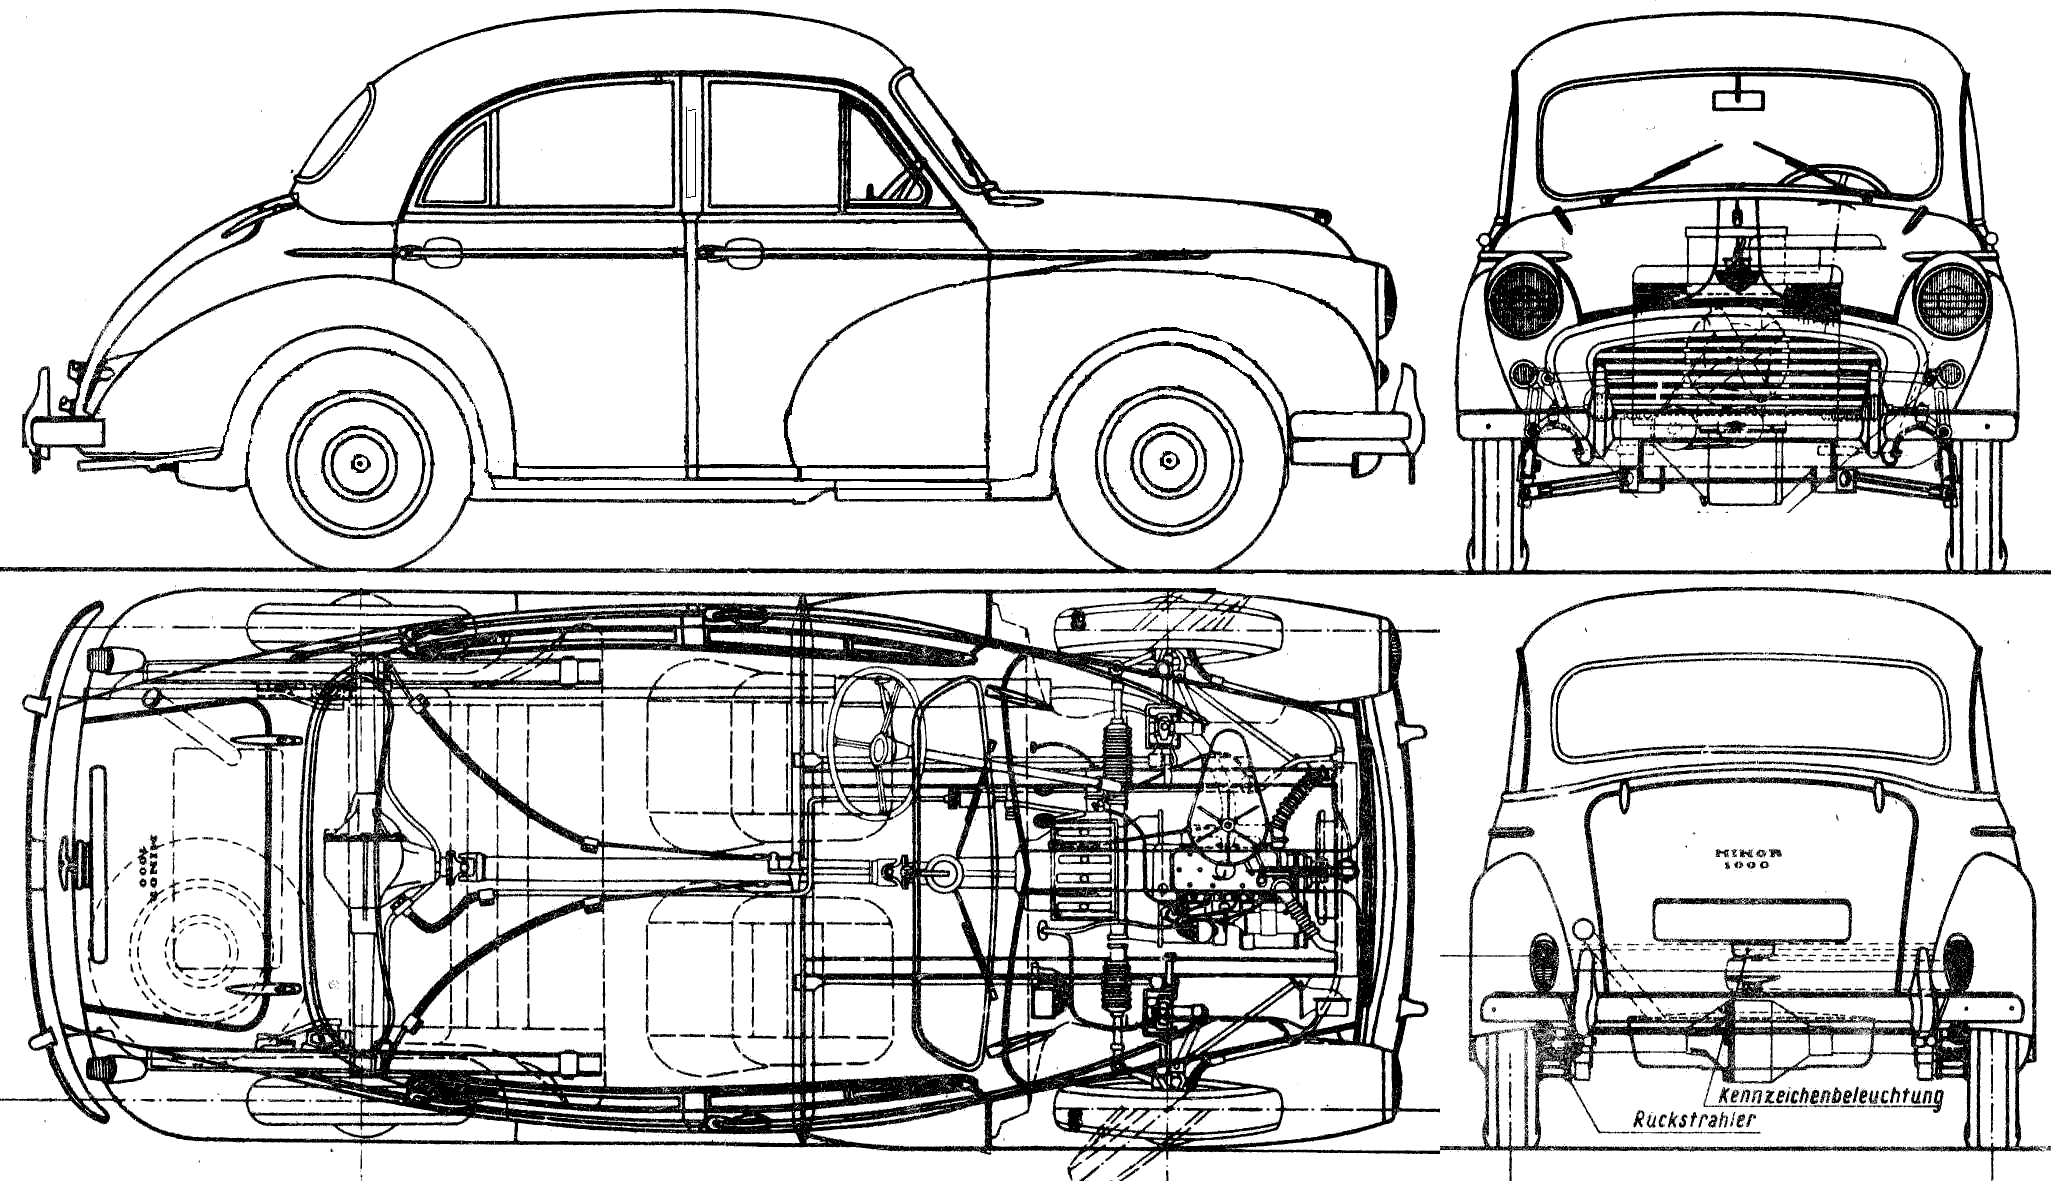 Plans de voiture - 1956 Modèle de berline Morris Minor 1000